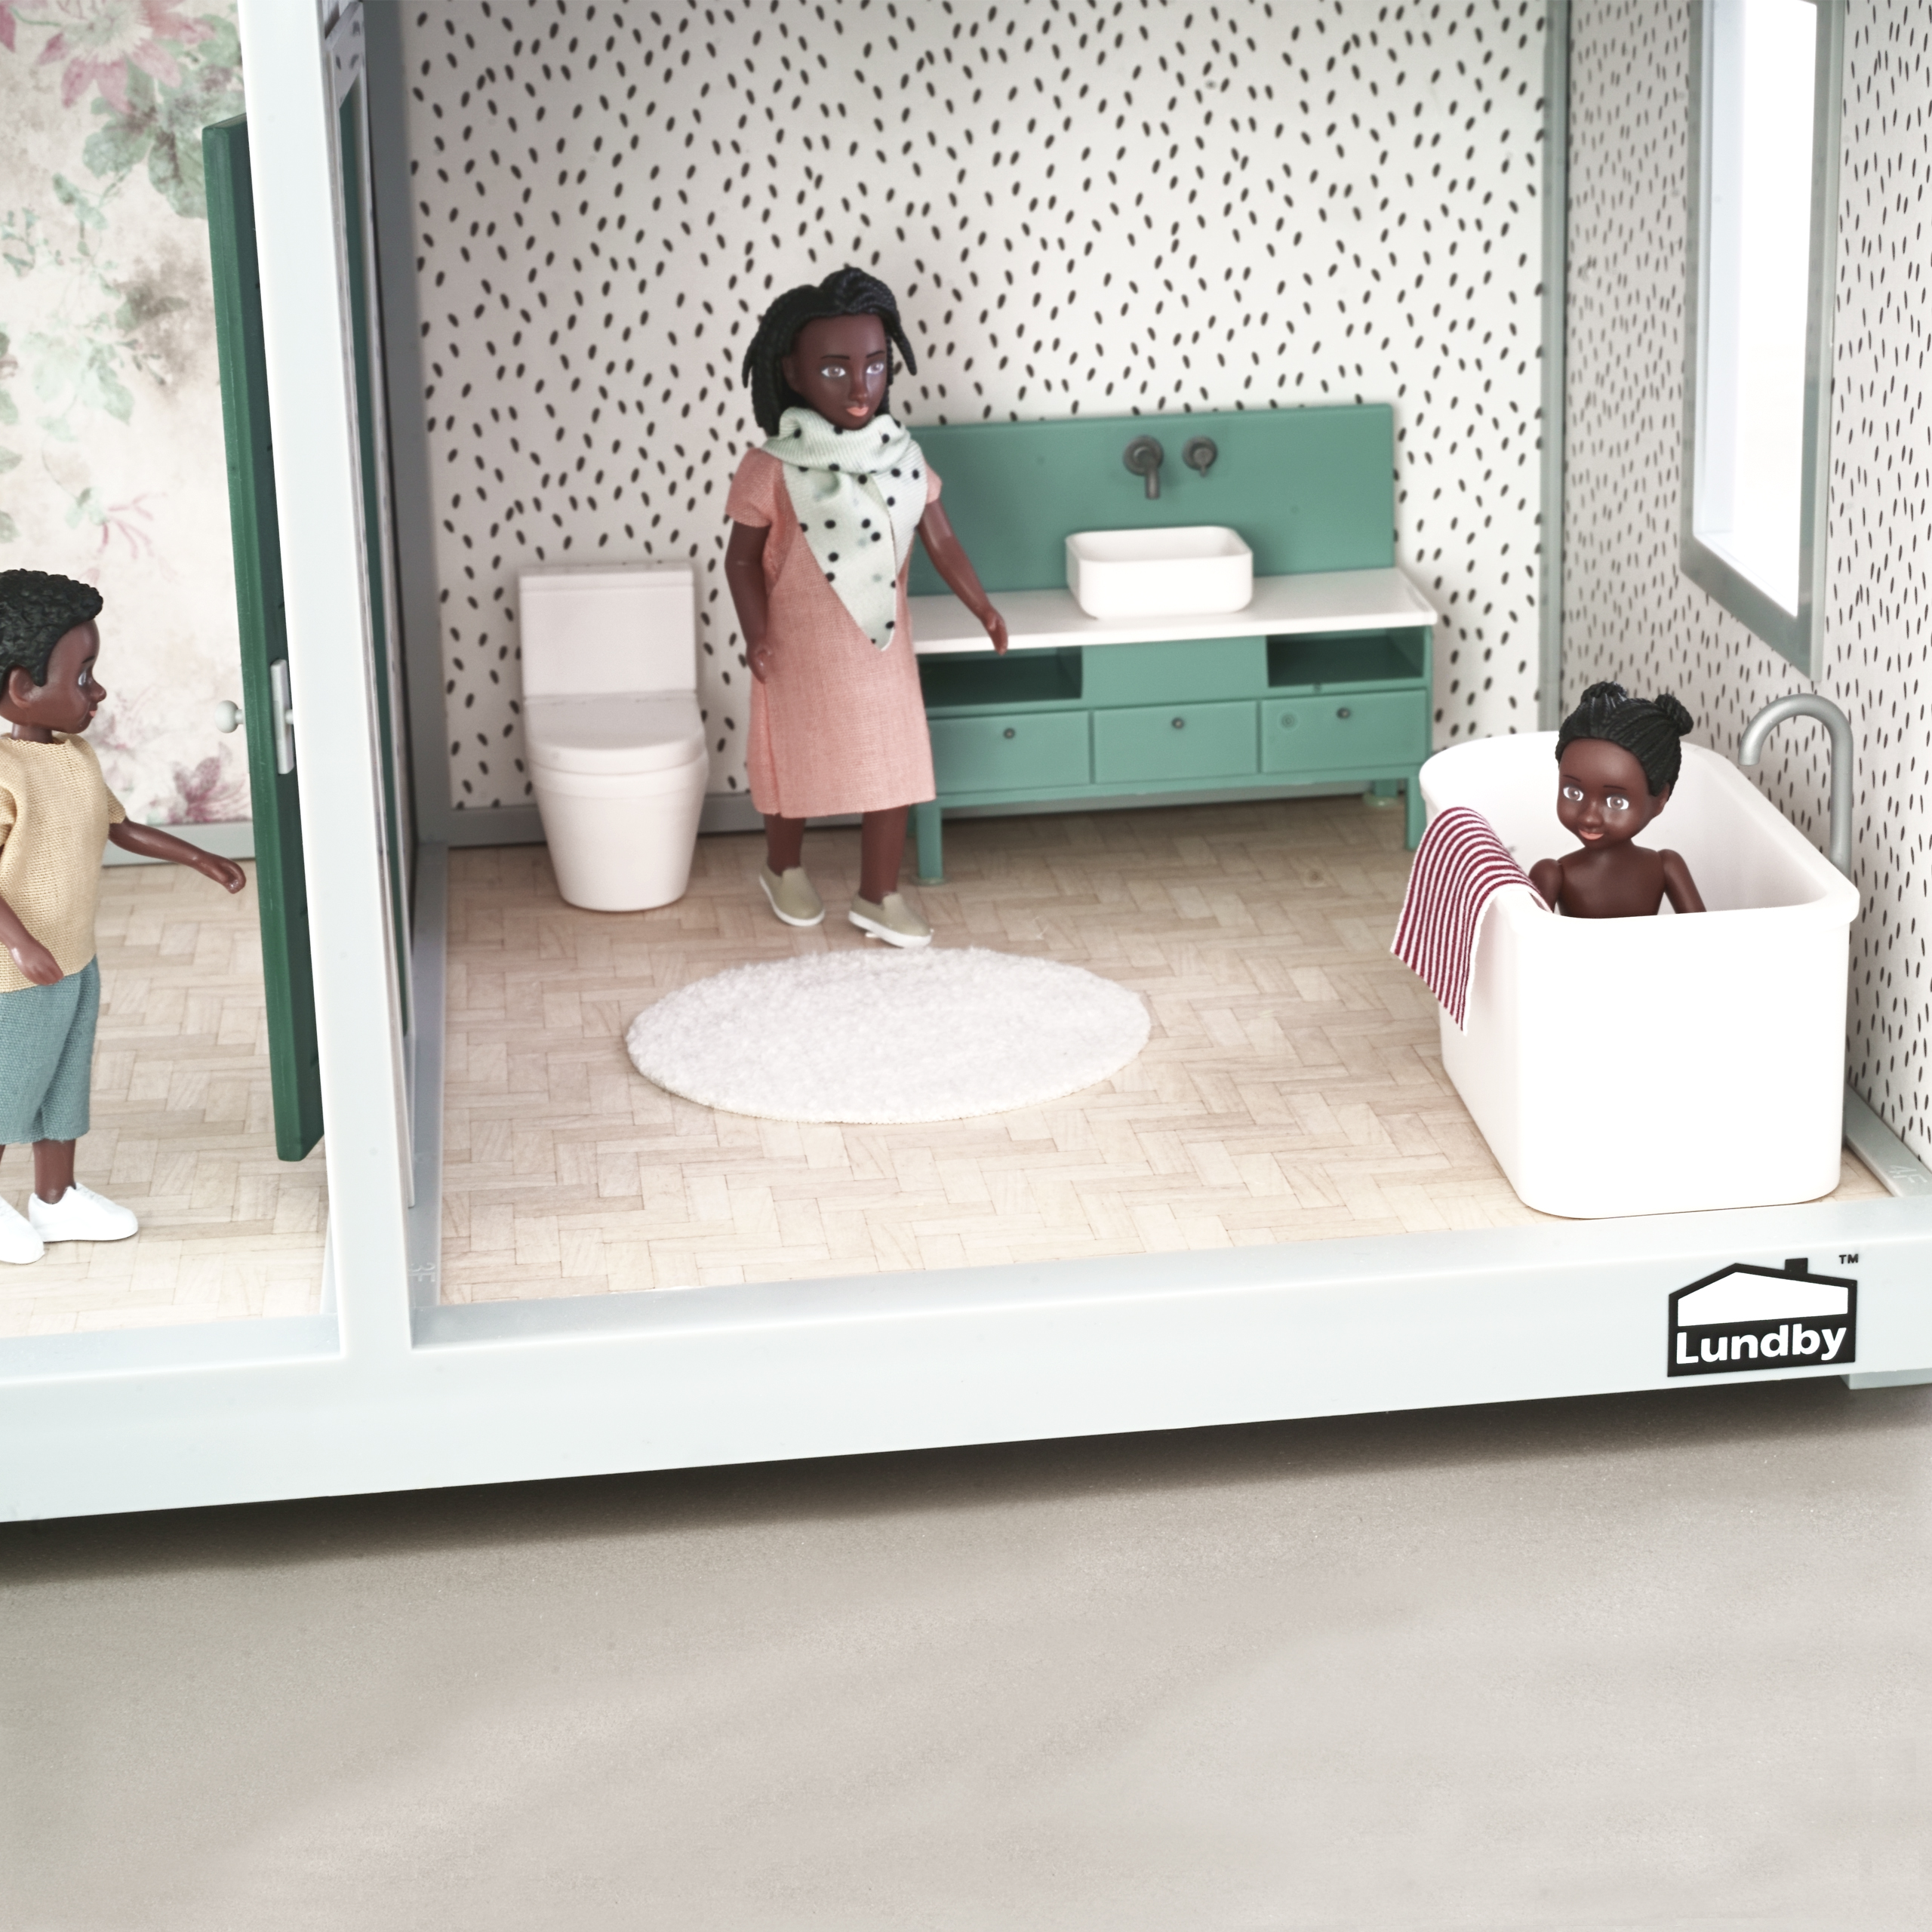 Lundby lundby dollhouse furniture bathroom set basic